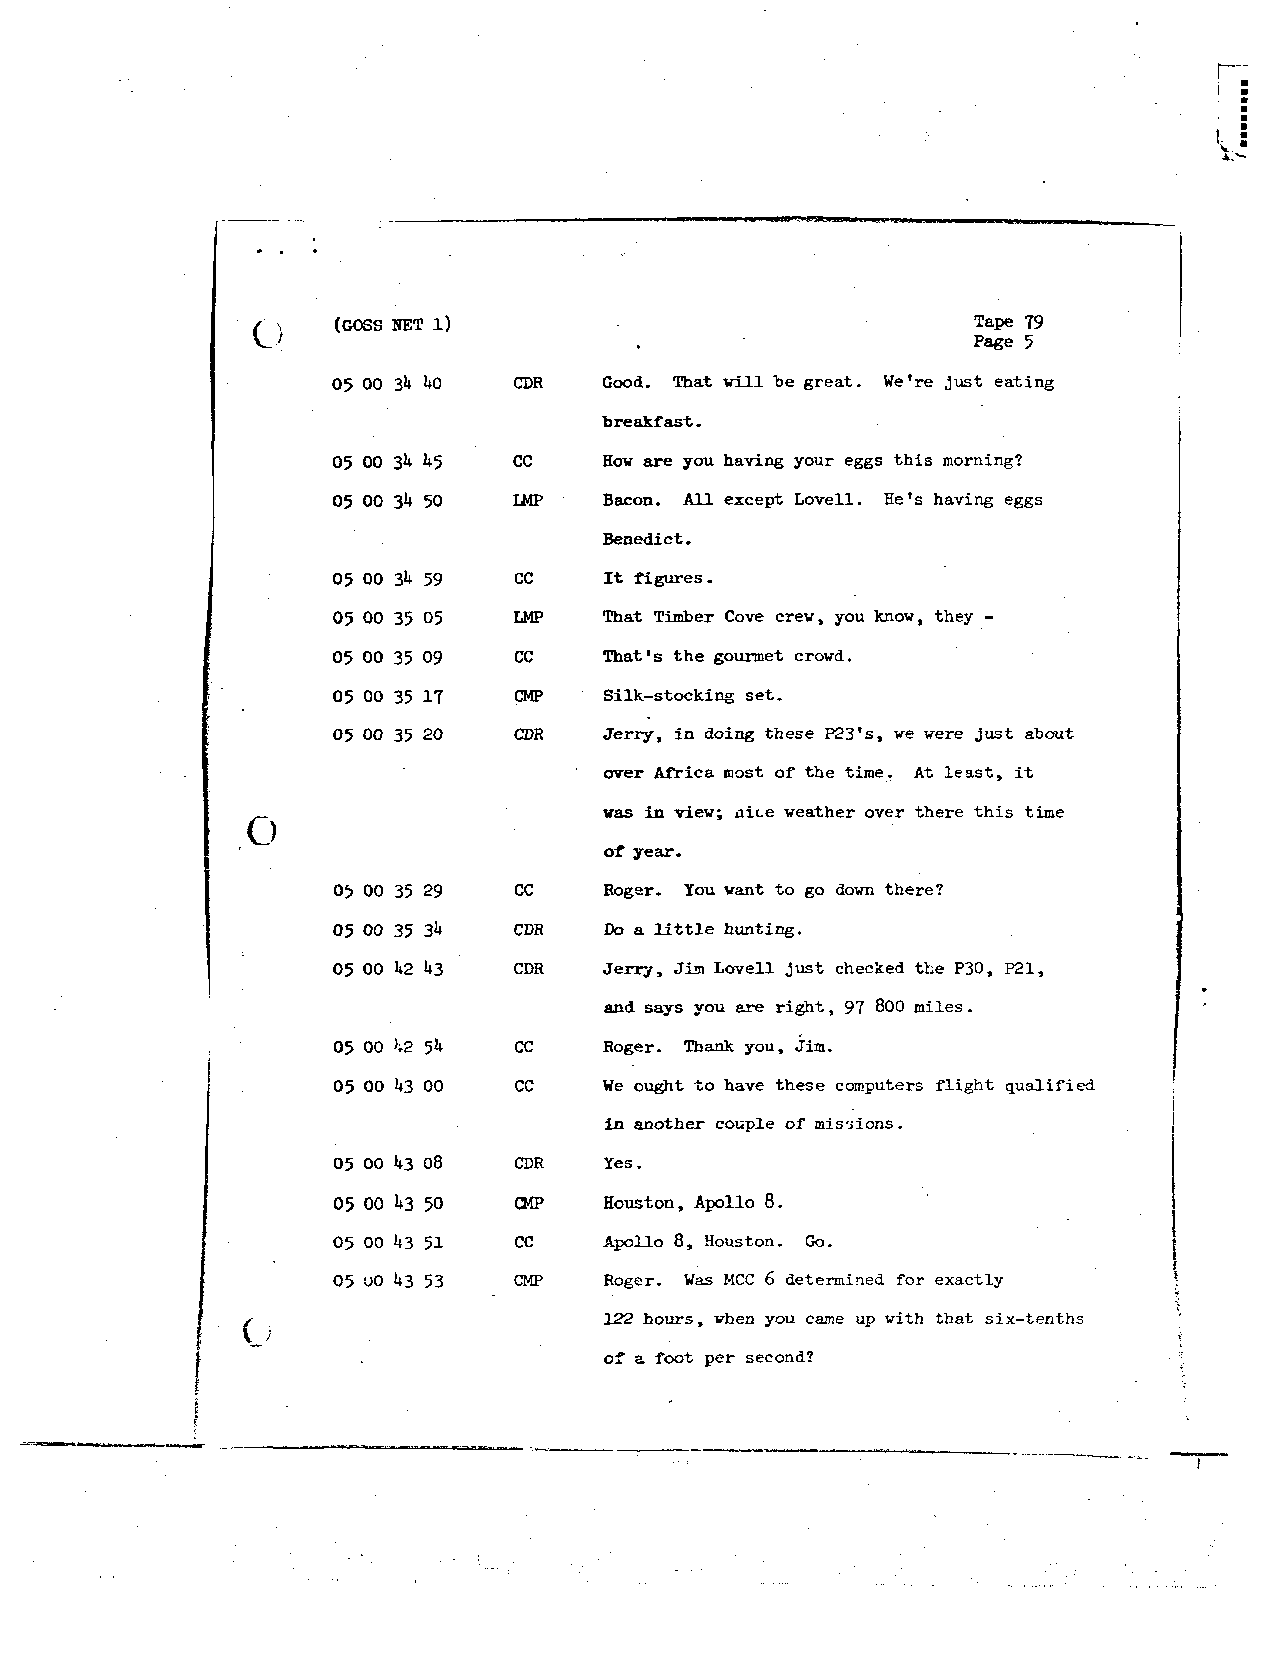 Page 656 of Apollo 8’s original transcript